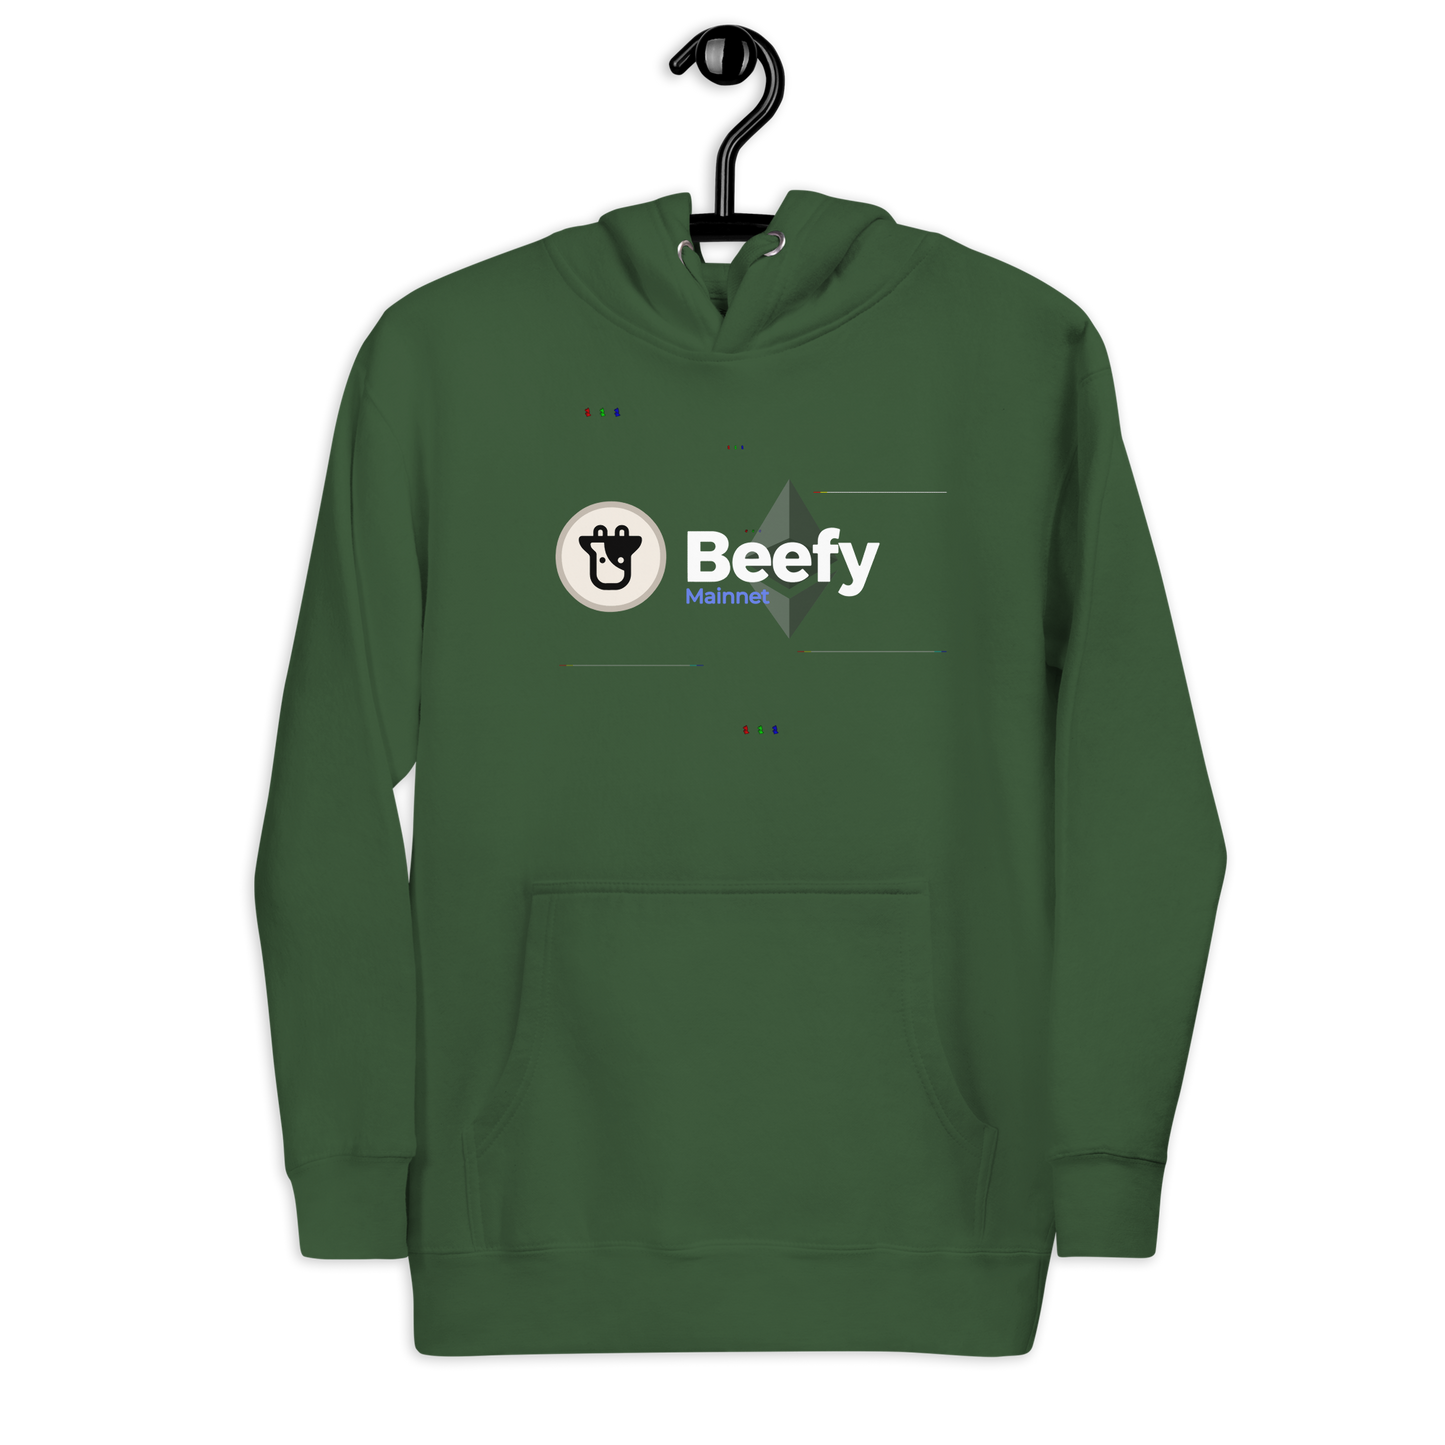 Beefy mainnet hoodie